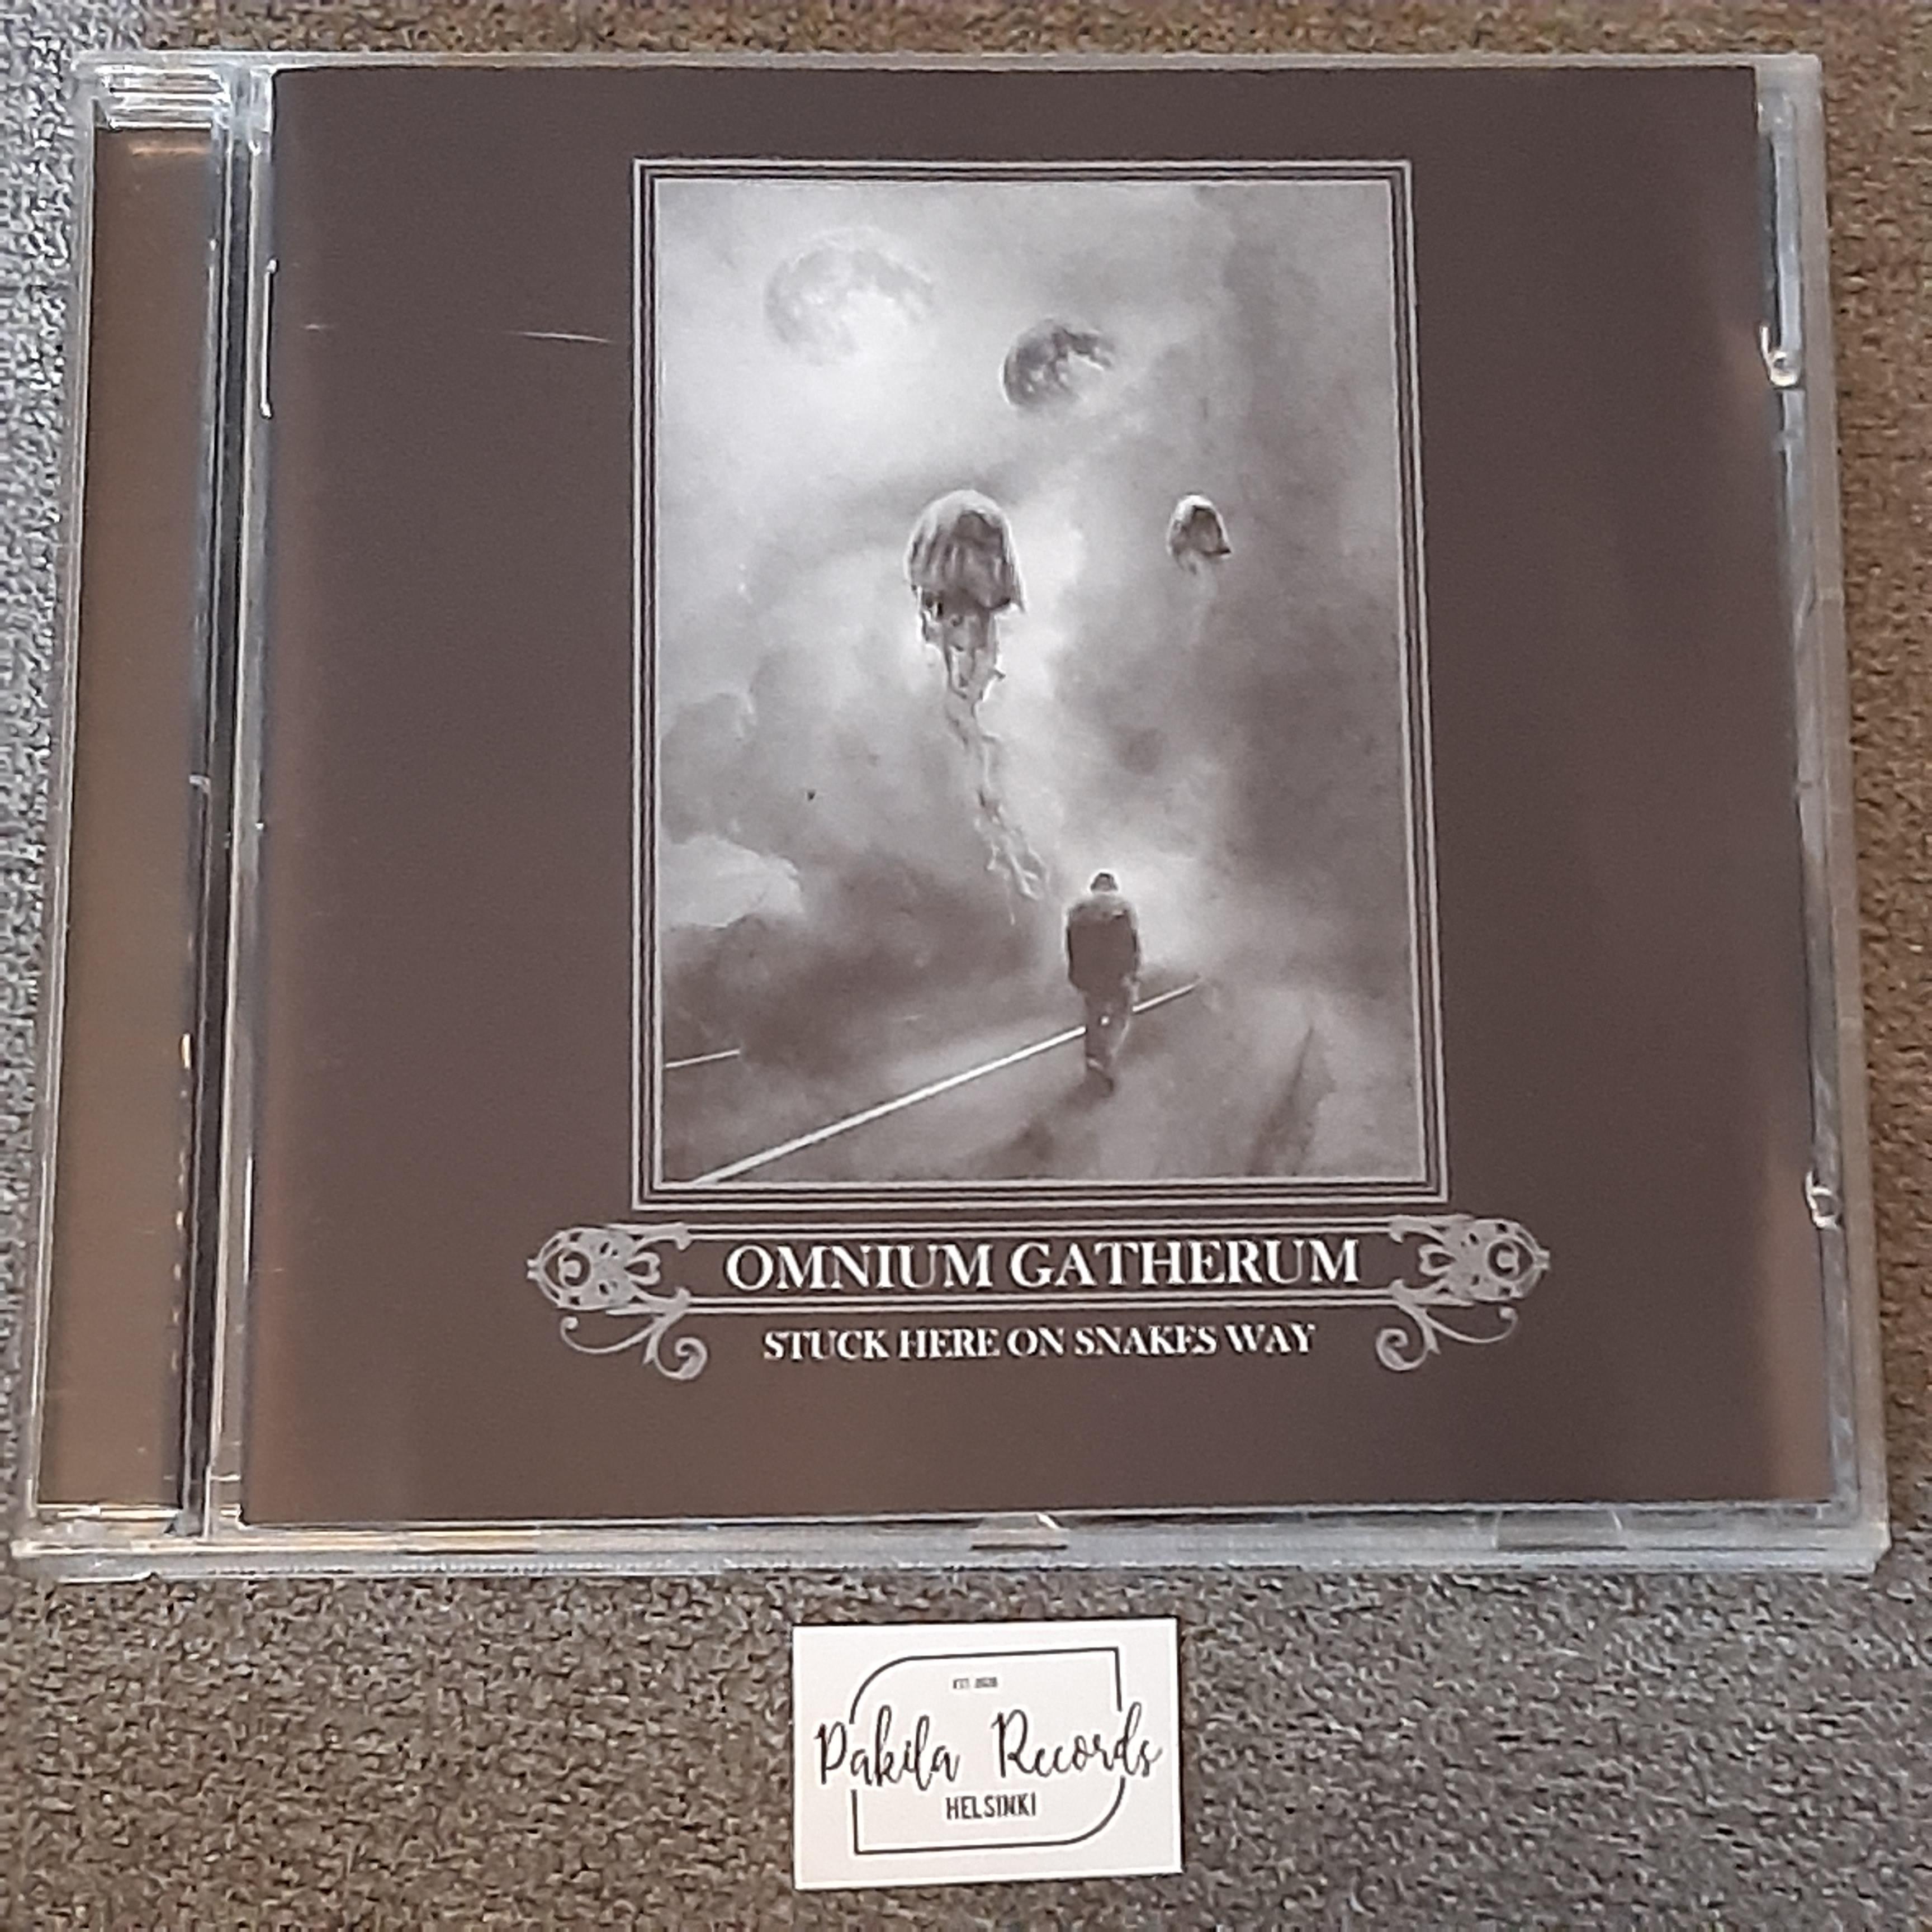 Omnium Gatherum - Stuck Here On Snakes Way - CD (käytetty)